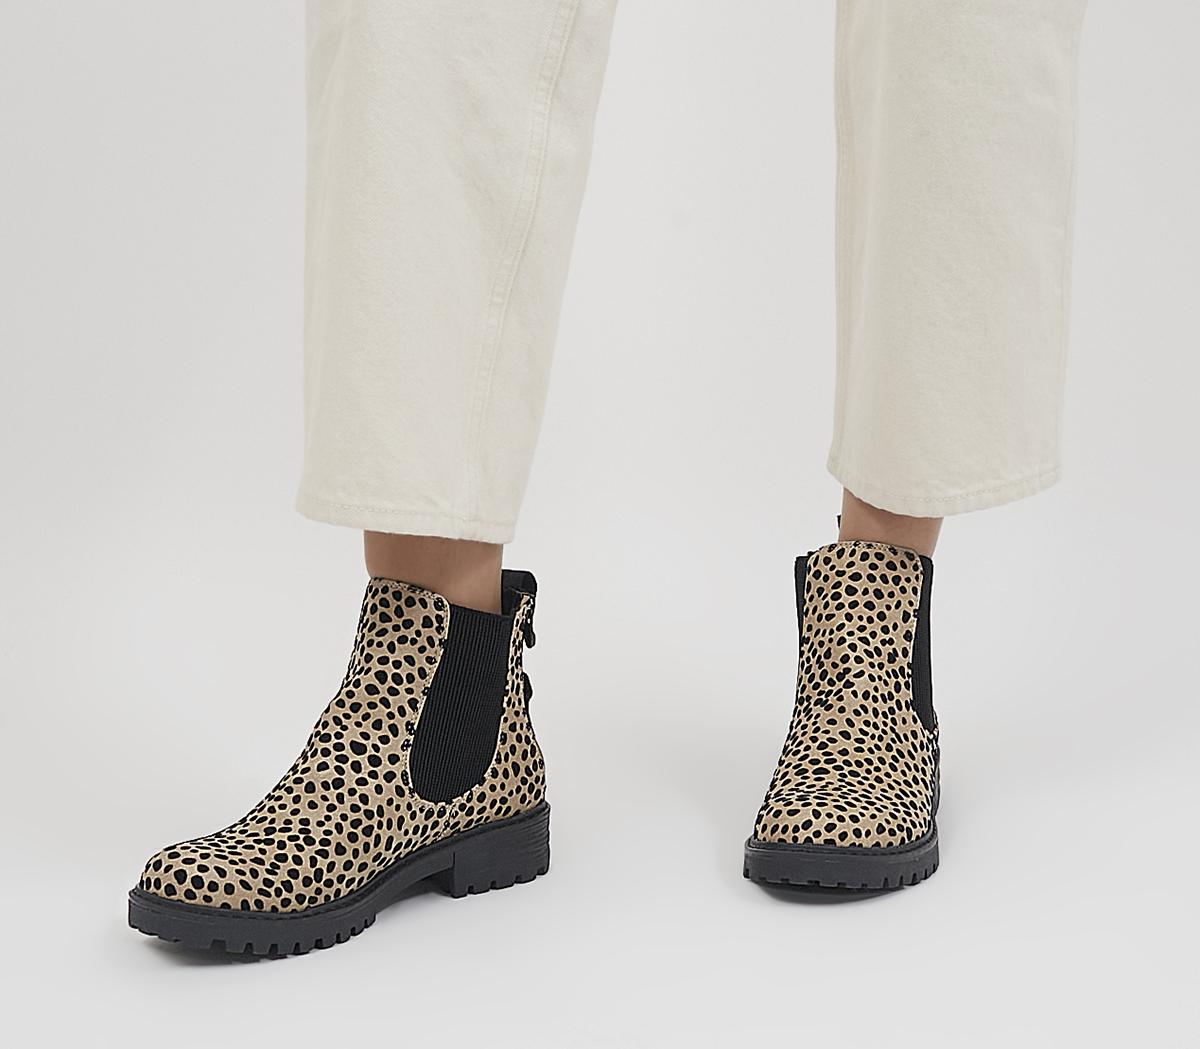 Alexander Graham Bell træk vejret at tilbagetrække Blowfish Malibu Raffal Chelsea Boots Pixie Leopard - Women's Ankle Boots